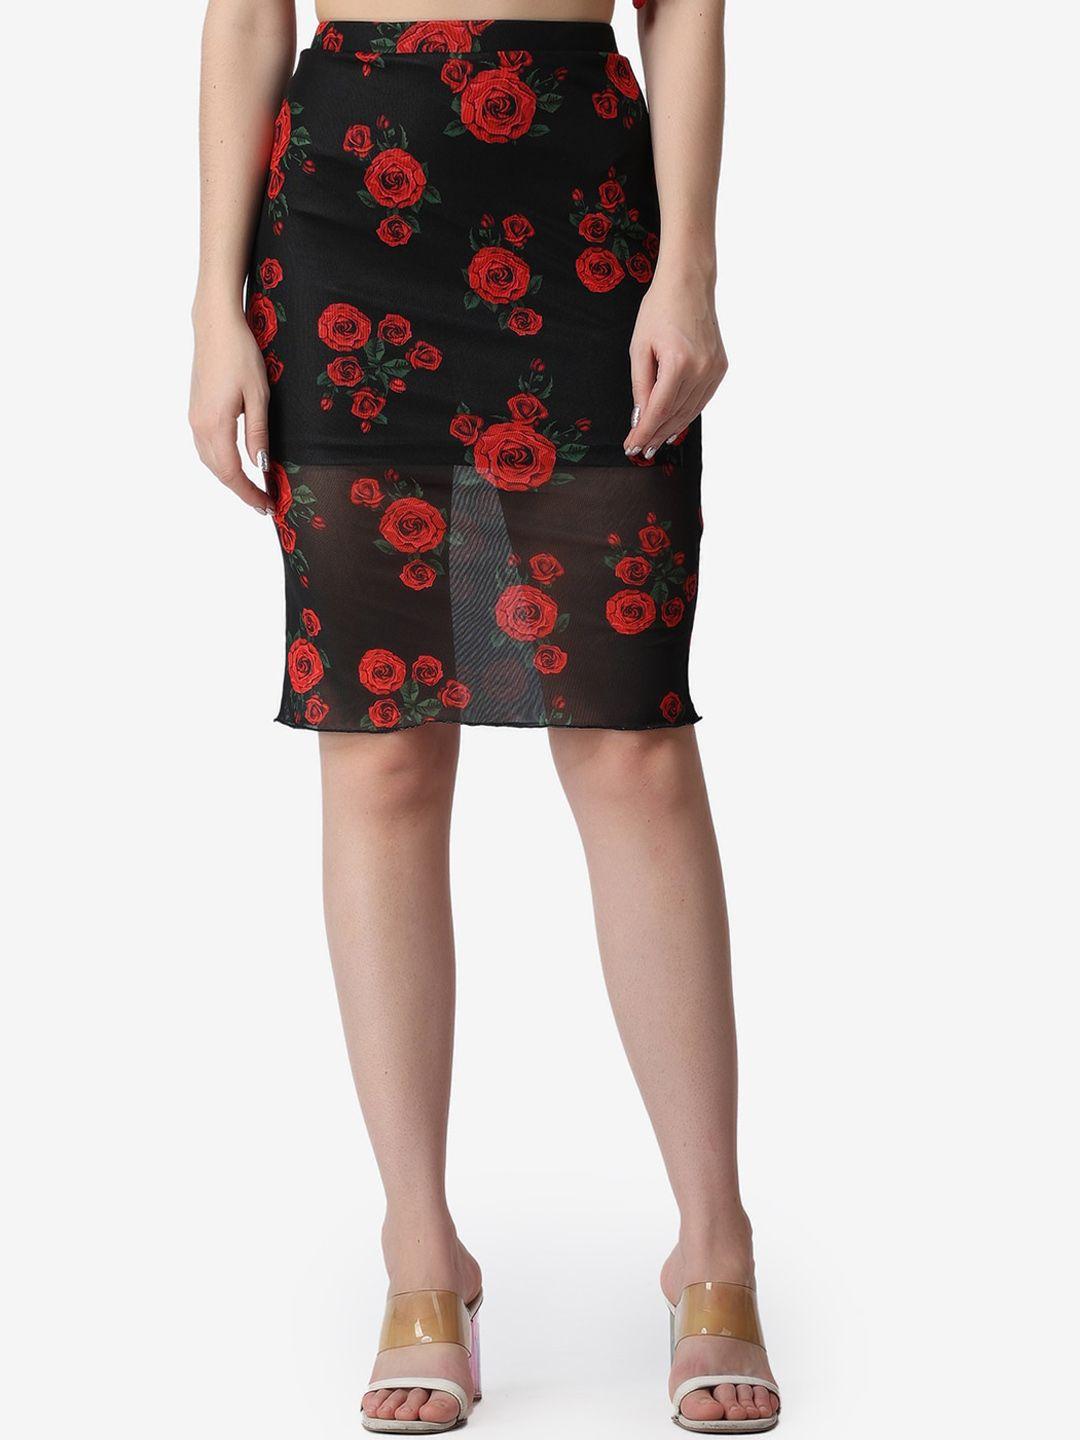 popwings women black & red floral printed knee length pencil skirt